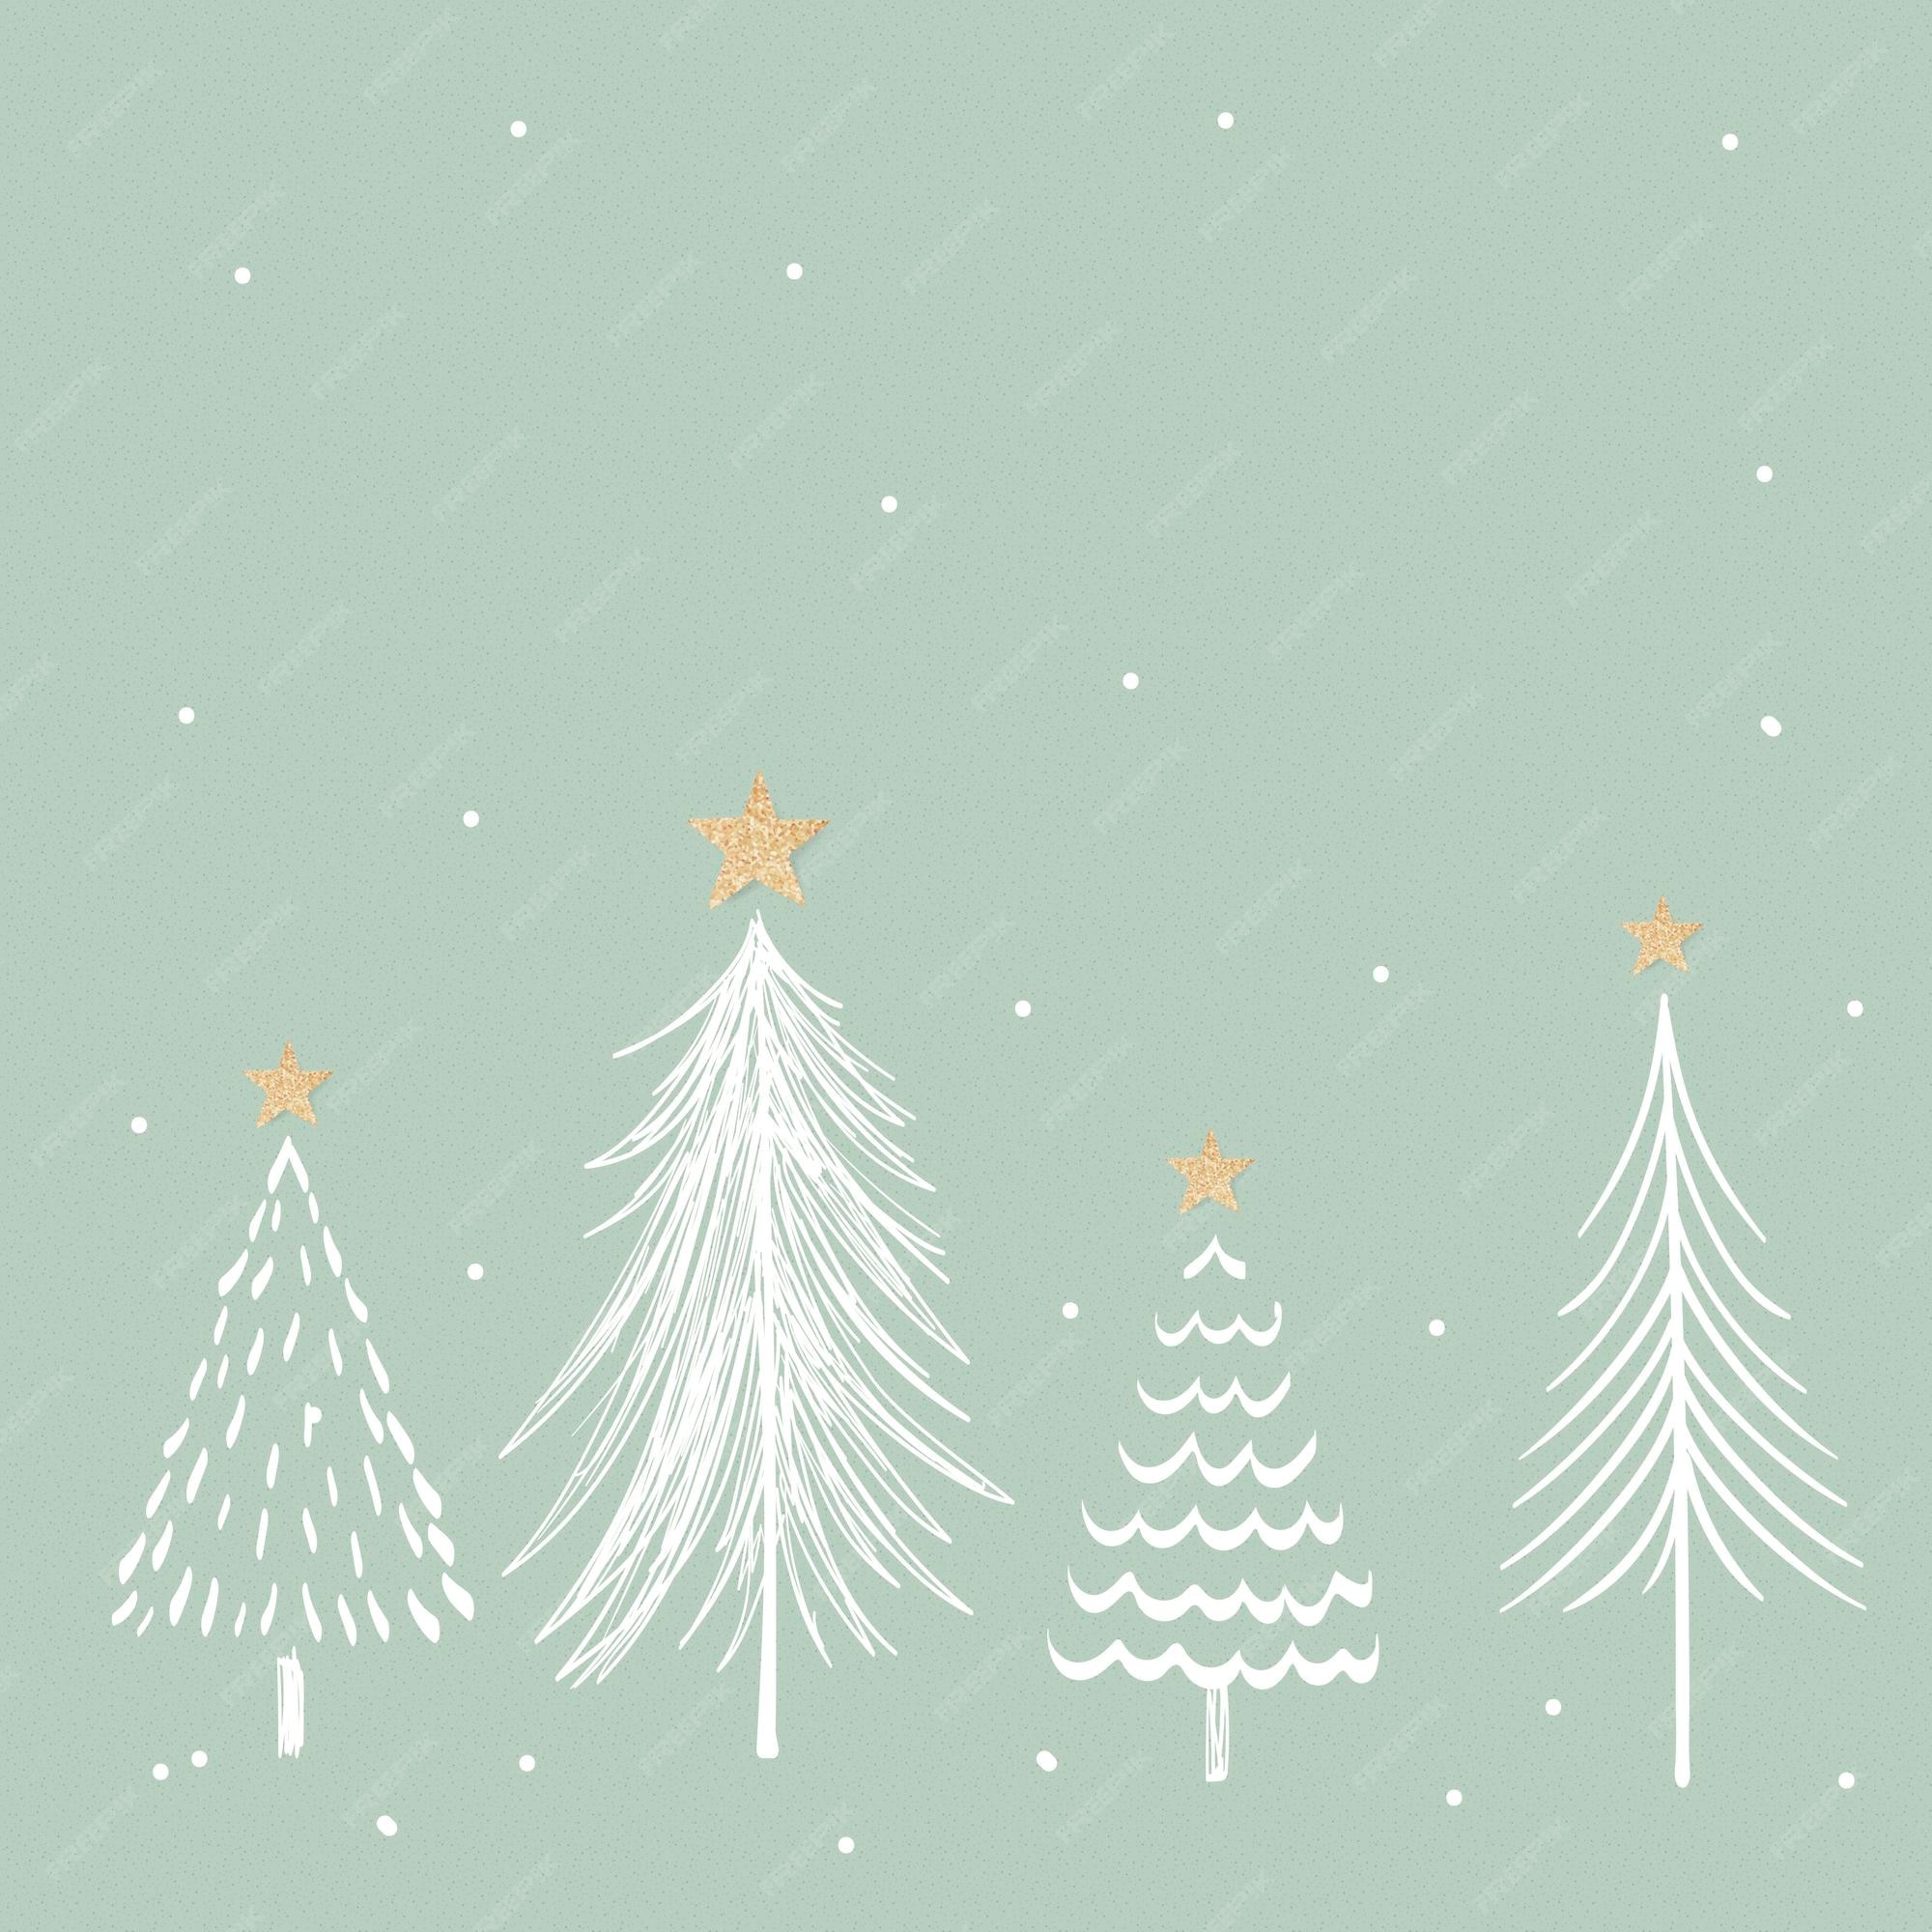 1) Với phông nền cây thông Giáng Sinh thẩm mỹ, bạn sẽ được chiêm ngưỡng một không gian ấm cúng, đầy màu sắc và sự pha trộn giữa văn hóa đông tây. Đừng bỏ lỡ cơ hội trải nghiệm trọn vẹn hứa hẹn sẽ mang đến cho bạn cảm giác của một mùa Giáng Sinh đầy ý nghĩa! 2) Từ phông nền cây thông Giáng Sinh thẩm mỹ, bạn sẽ được đắm mình trong vẻ đẹp đầy phù phiếm của một mùa lễ hội đang đến gần. Từ ánh đèn lung linh đến những chiếc quà tặng thú vị, hãy cùng nhau khám phá những điều kỳ diệu mà mùa Giáng Sinh mang lại! 3) Lựa chọn phông nền cây thông Giáng Sinh thẩm mỹ, bạn sẽ được đắm chìm trong một không gian lộng lẫy đầy ấn tượng. Từ những gam màu đỏ, xanh lá cây đến hạt nhựa soán ngôi, tất cả đều làm nên sự trang trí tuyệt đẹp cho ngôi nhà của bạn. Hãy cùng idolux khám phá thêm những điều thú vị khác nữa trong mùa lễ hội này.